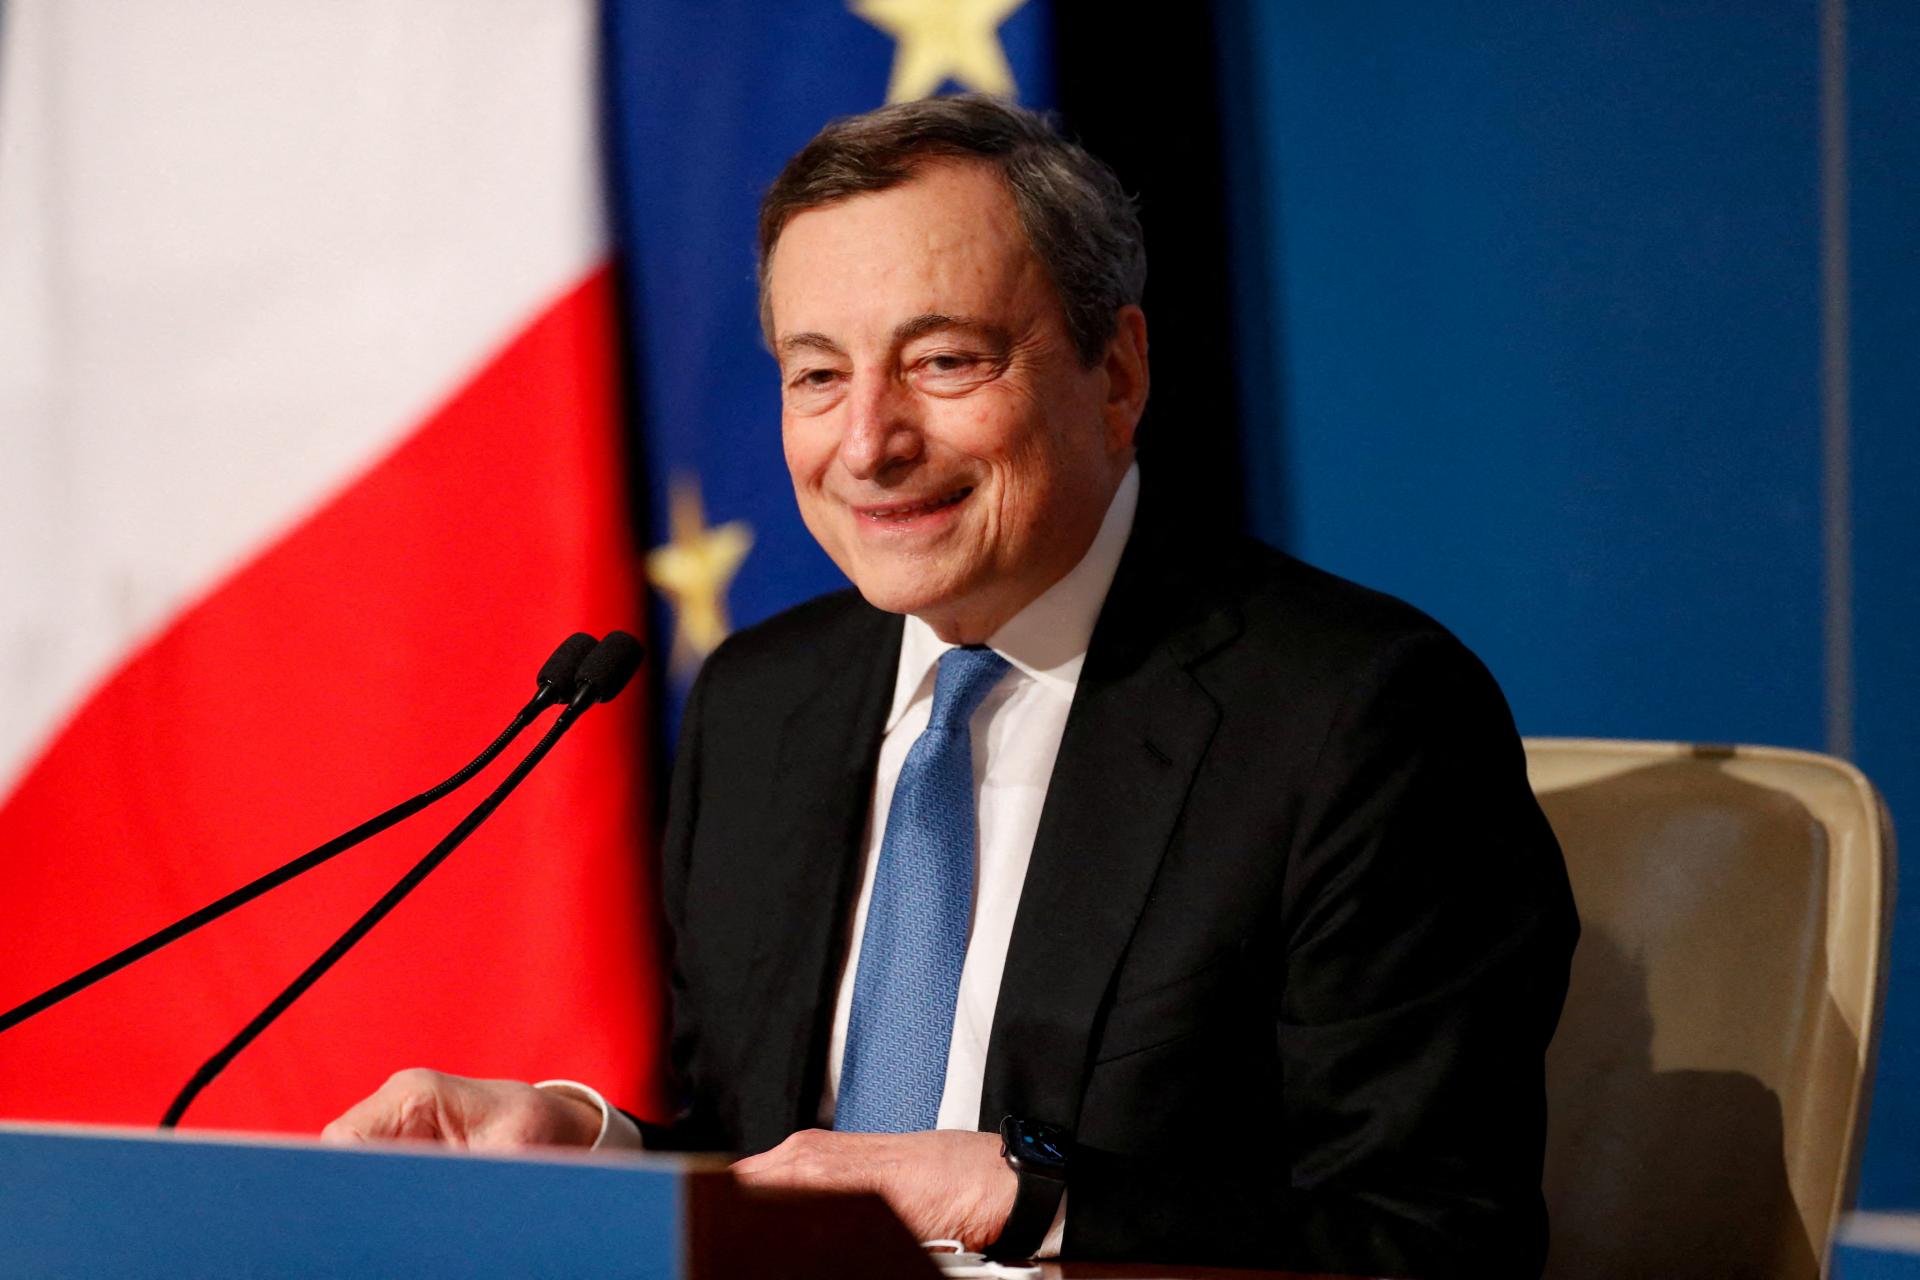 Kandidátom na šéfa Európskej komisie by mohol byť bývalý taliansky premiér Mario Draghi, píšu zahraničné médiá